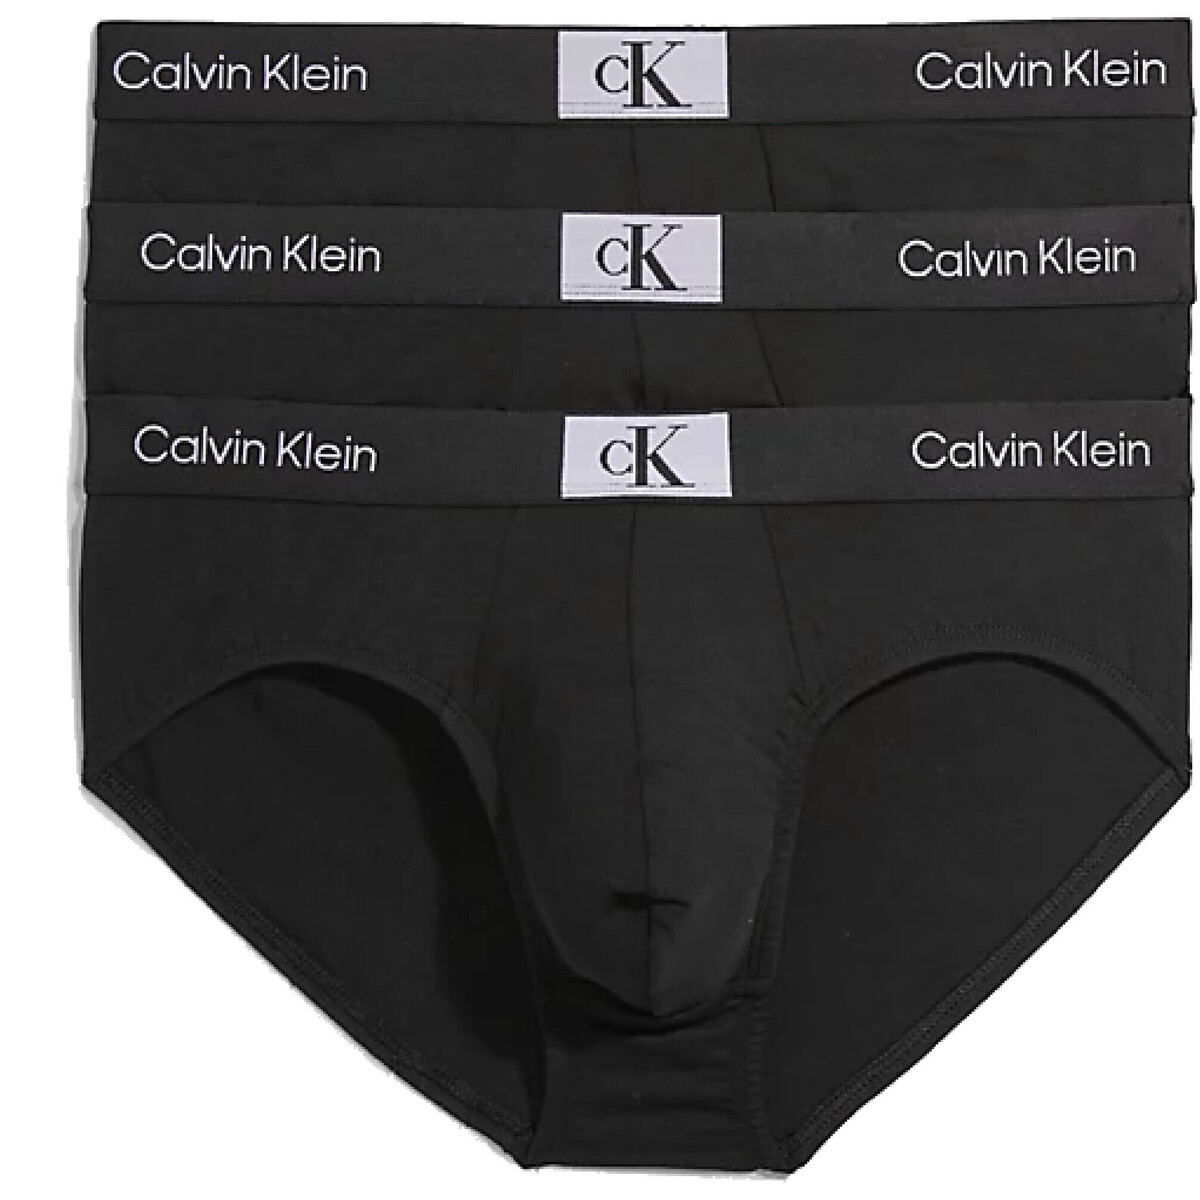 Купальники Calvin Klein в Львове Cueca В наличии джинсы calvin klein оригинал 000NB3527A Preto